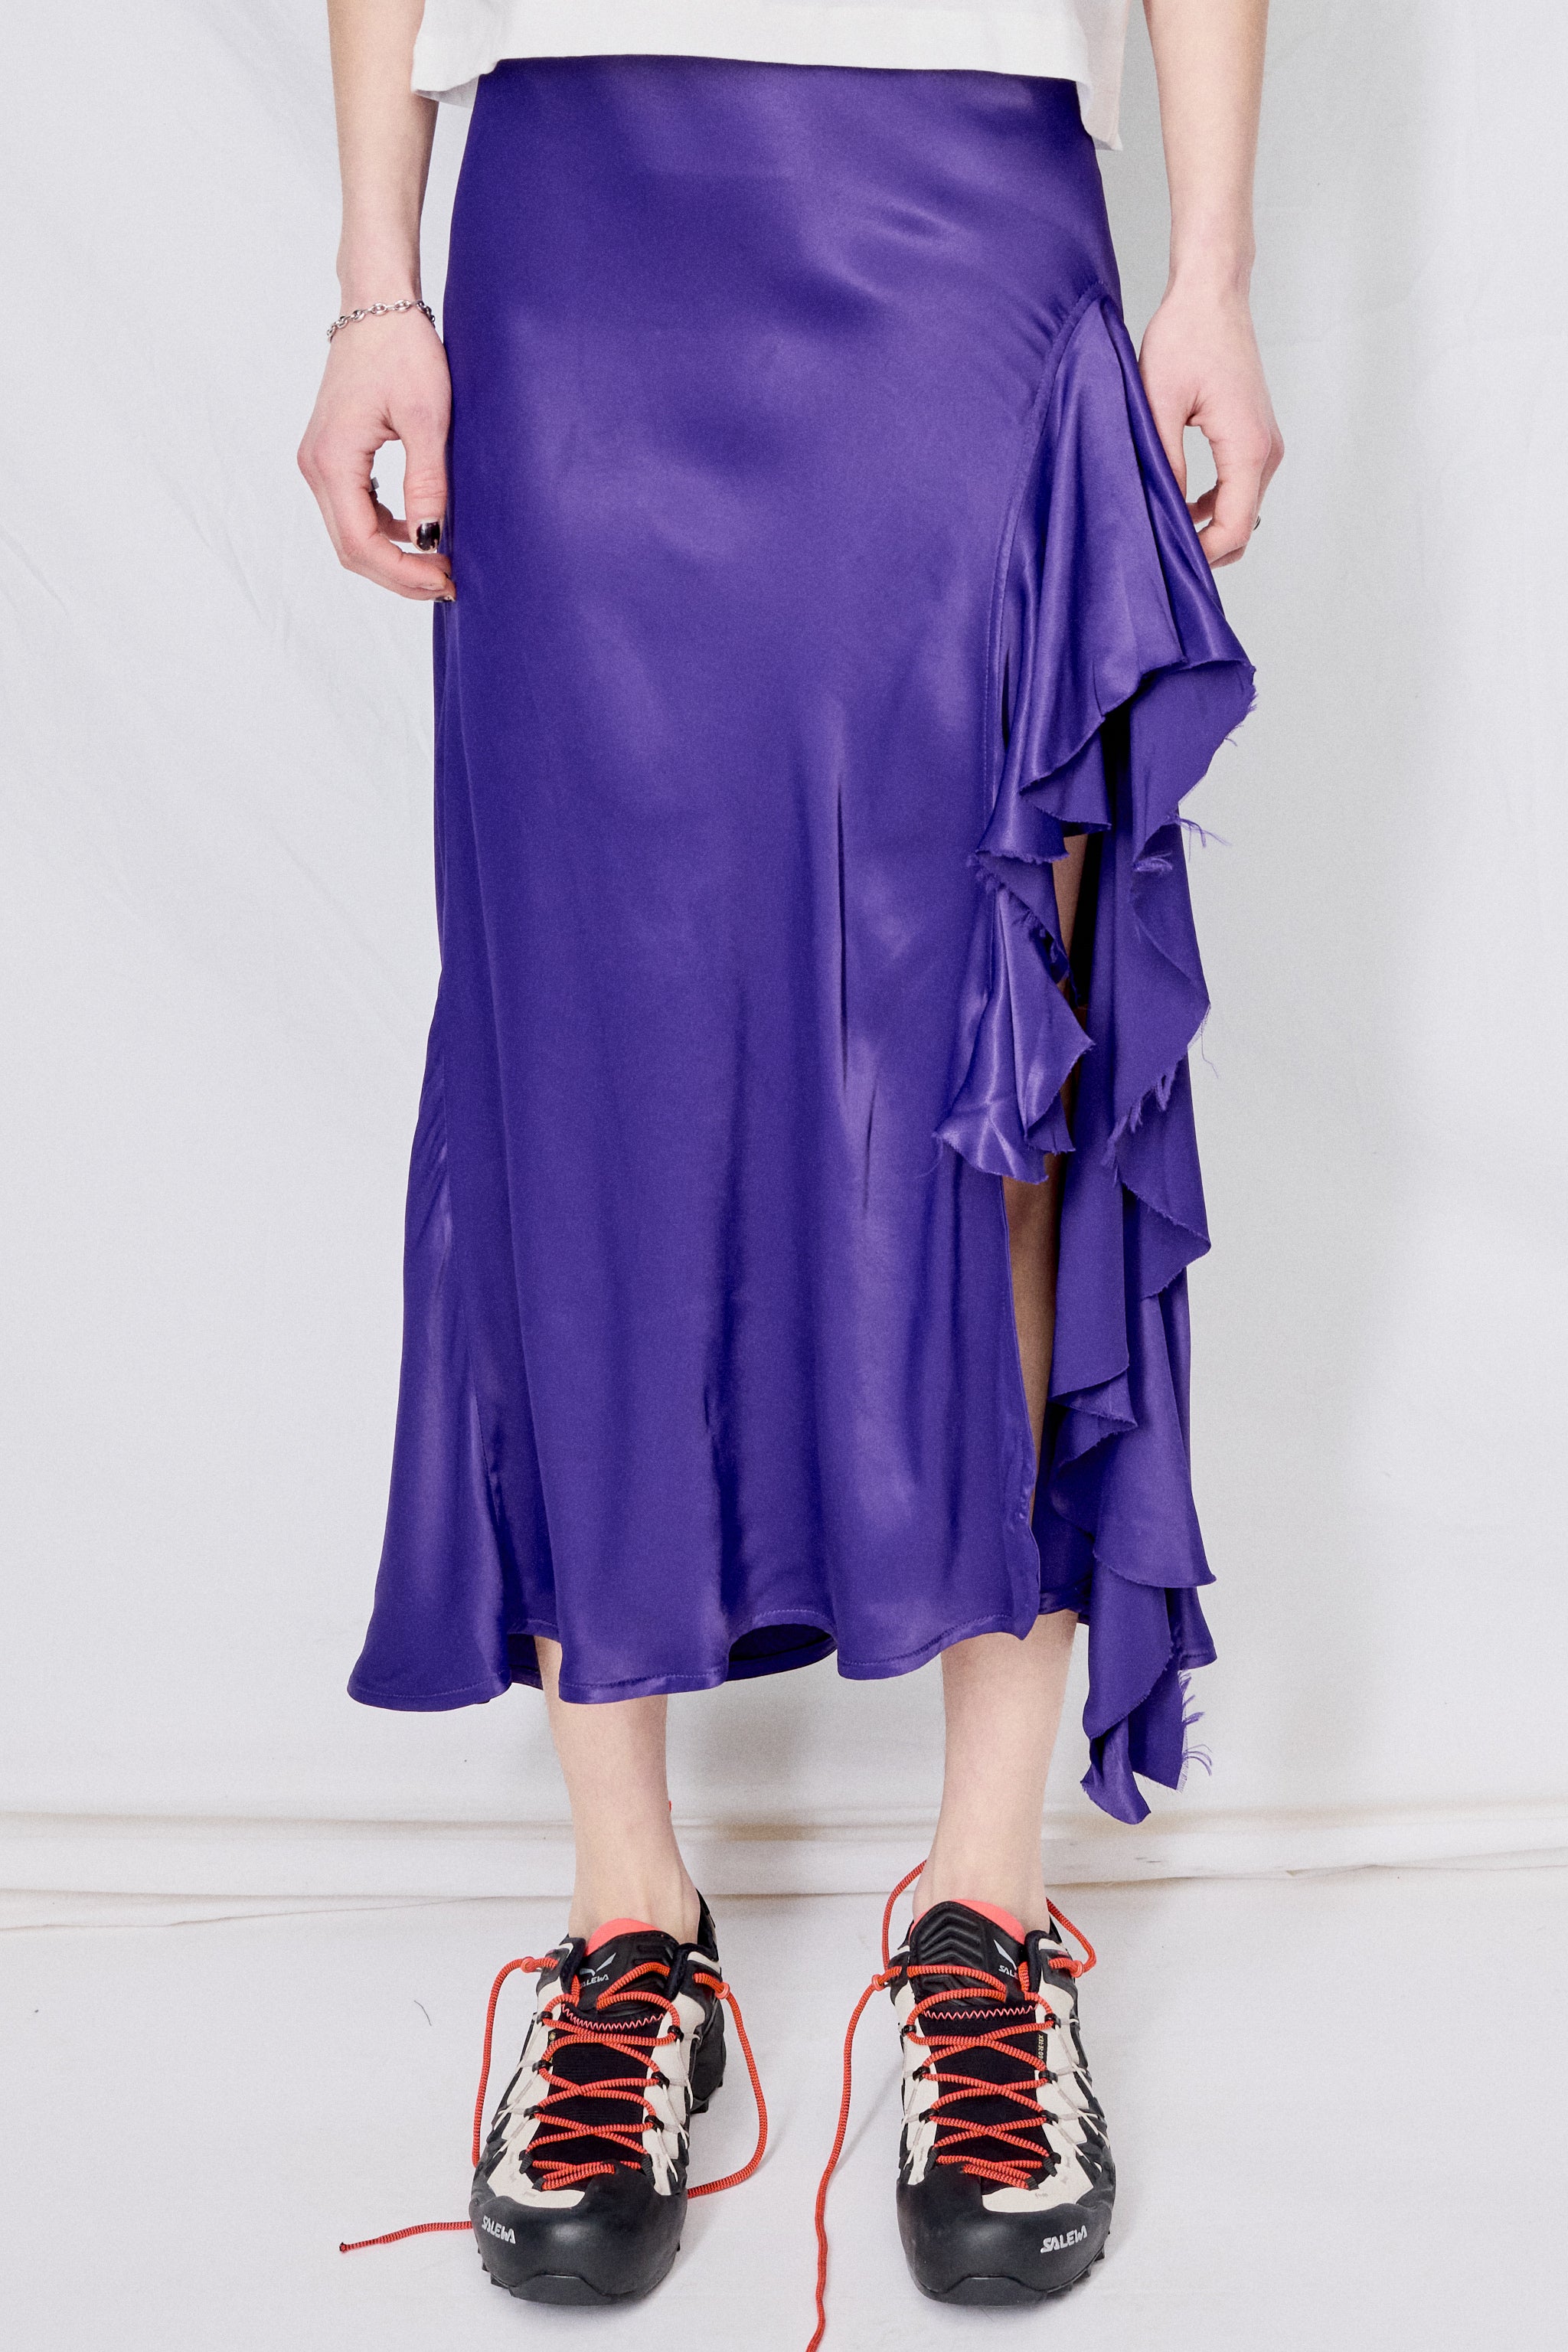 Lilac Ruffle Skirt Set | Nazia Syed